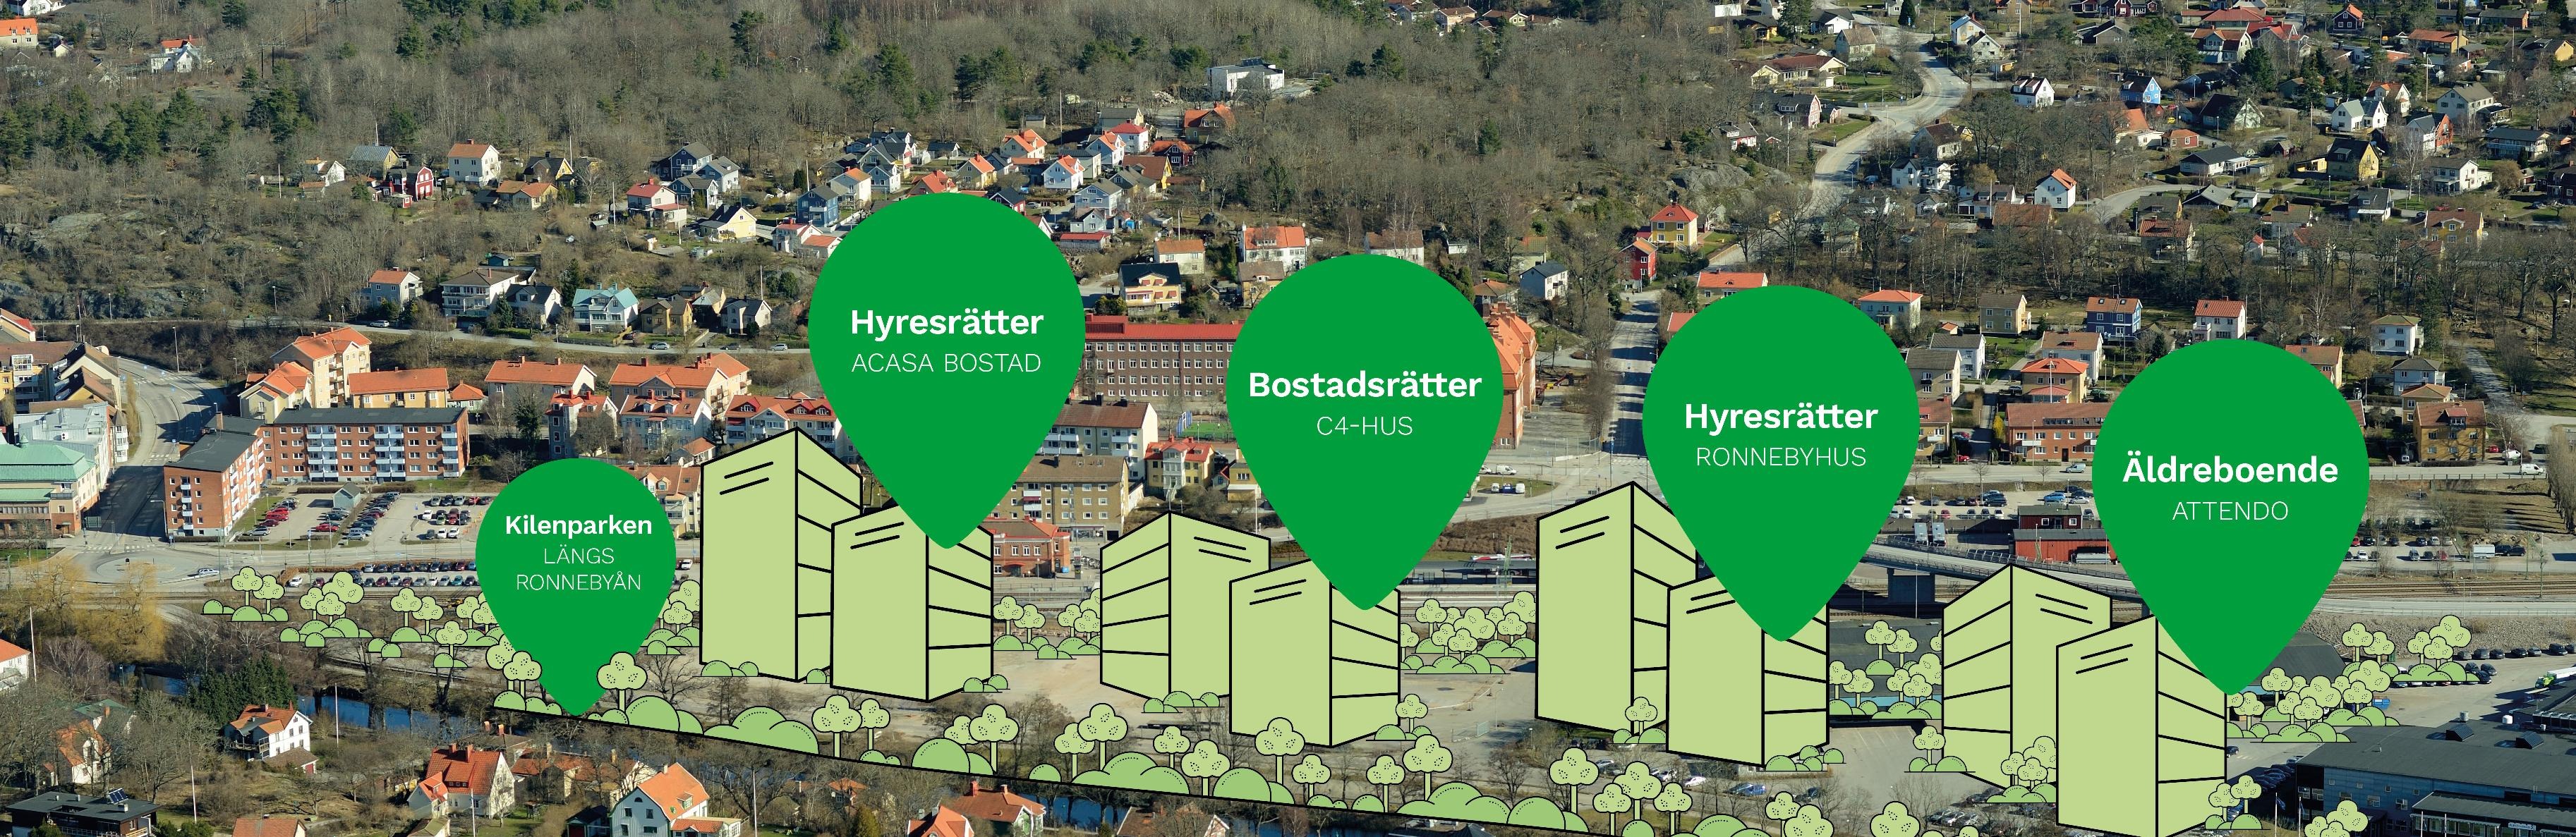 Översiktsbild över området Kilen. Gröna illustrationer av lägenhetshus syns utplacerade längst Ronnebyån. 